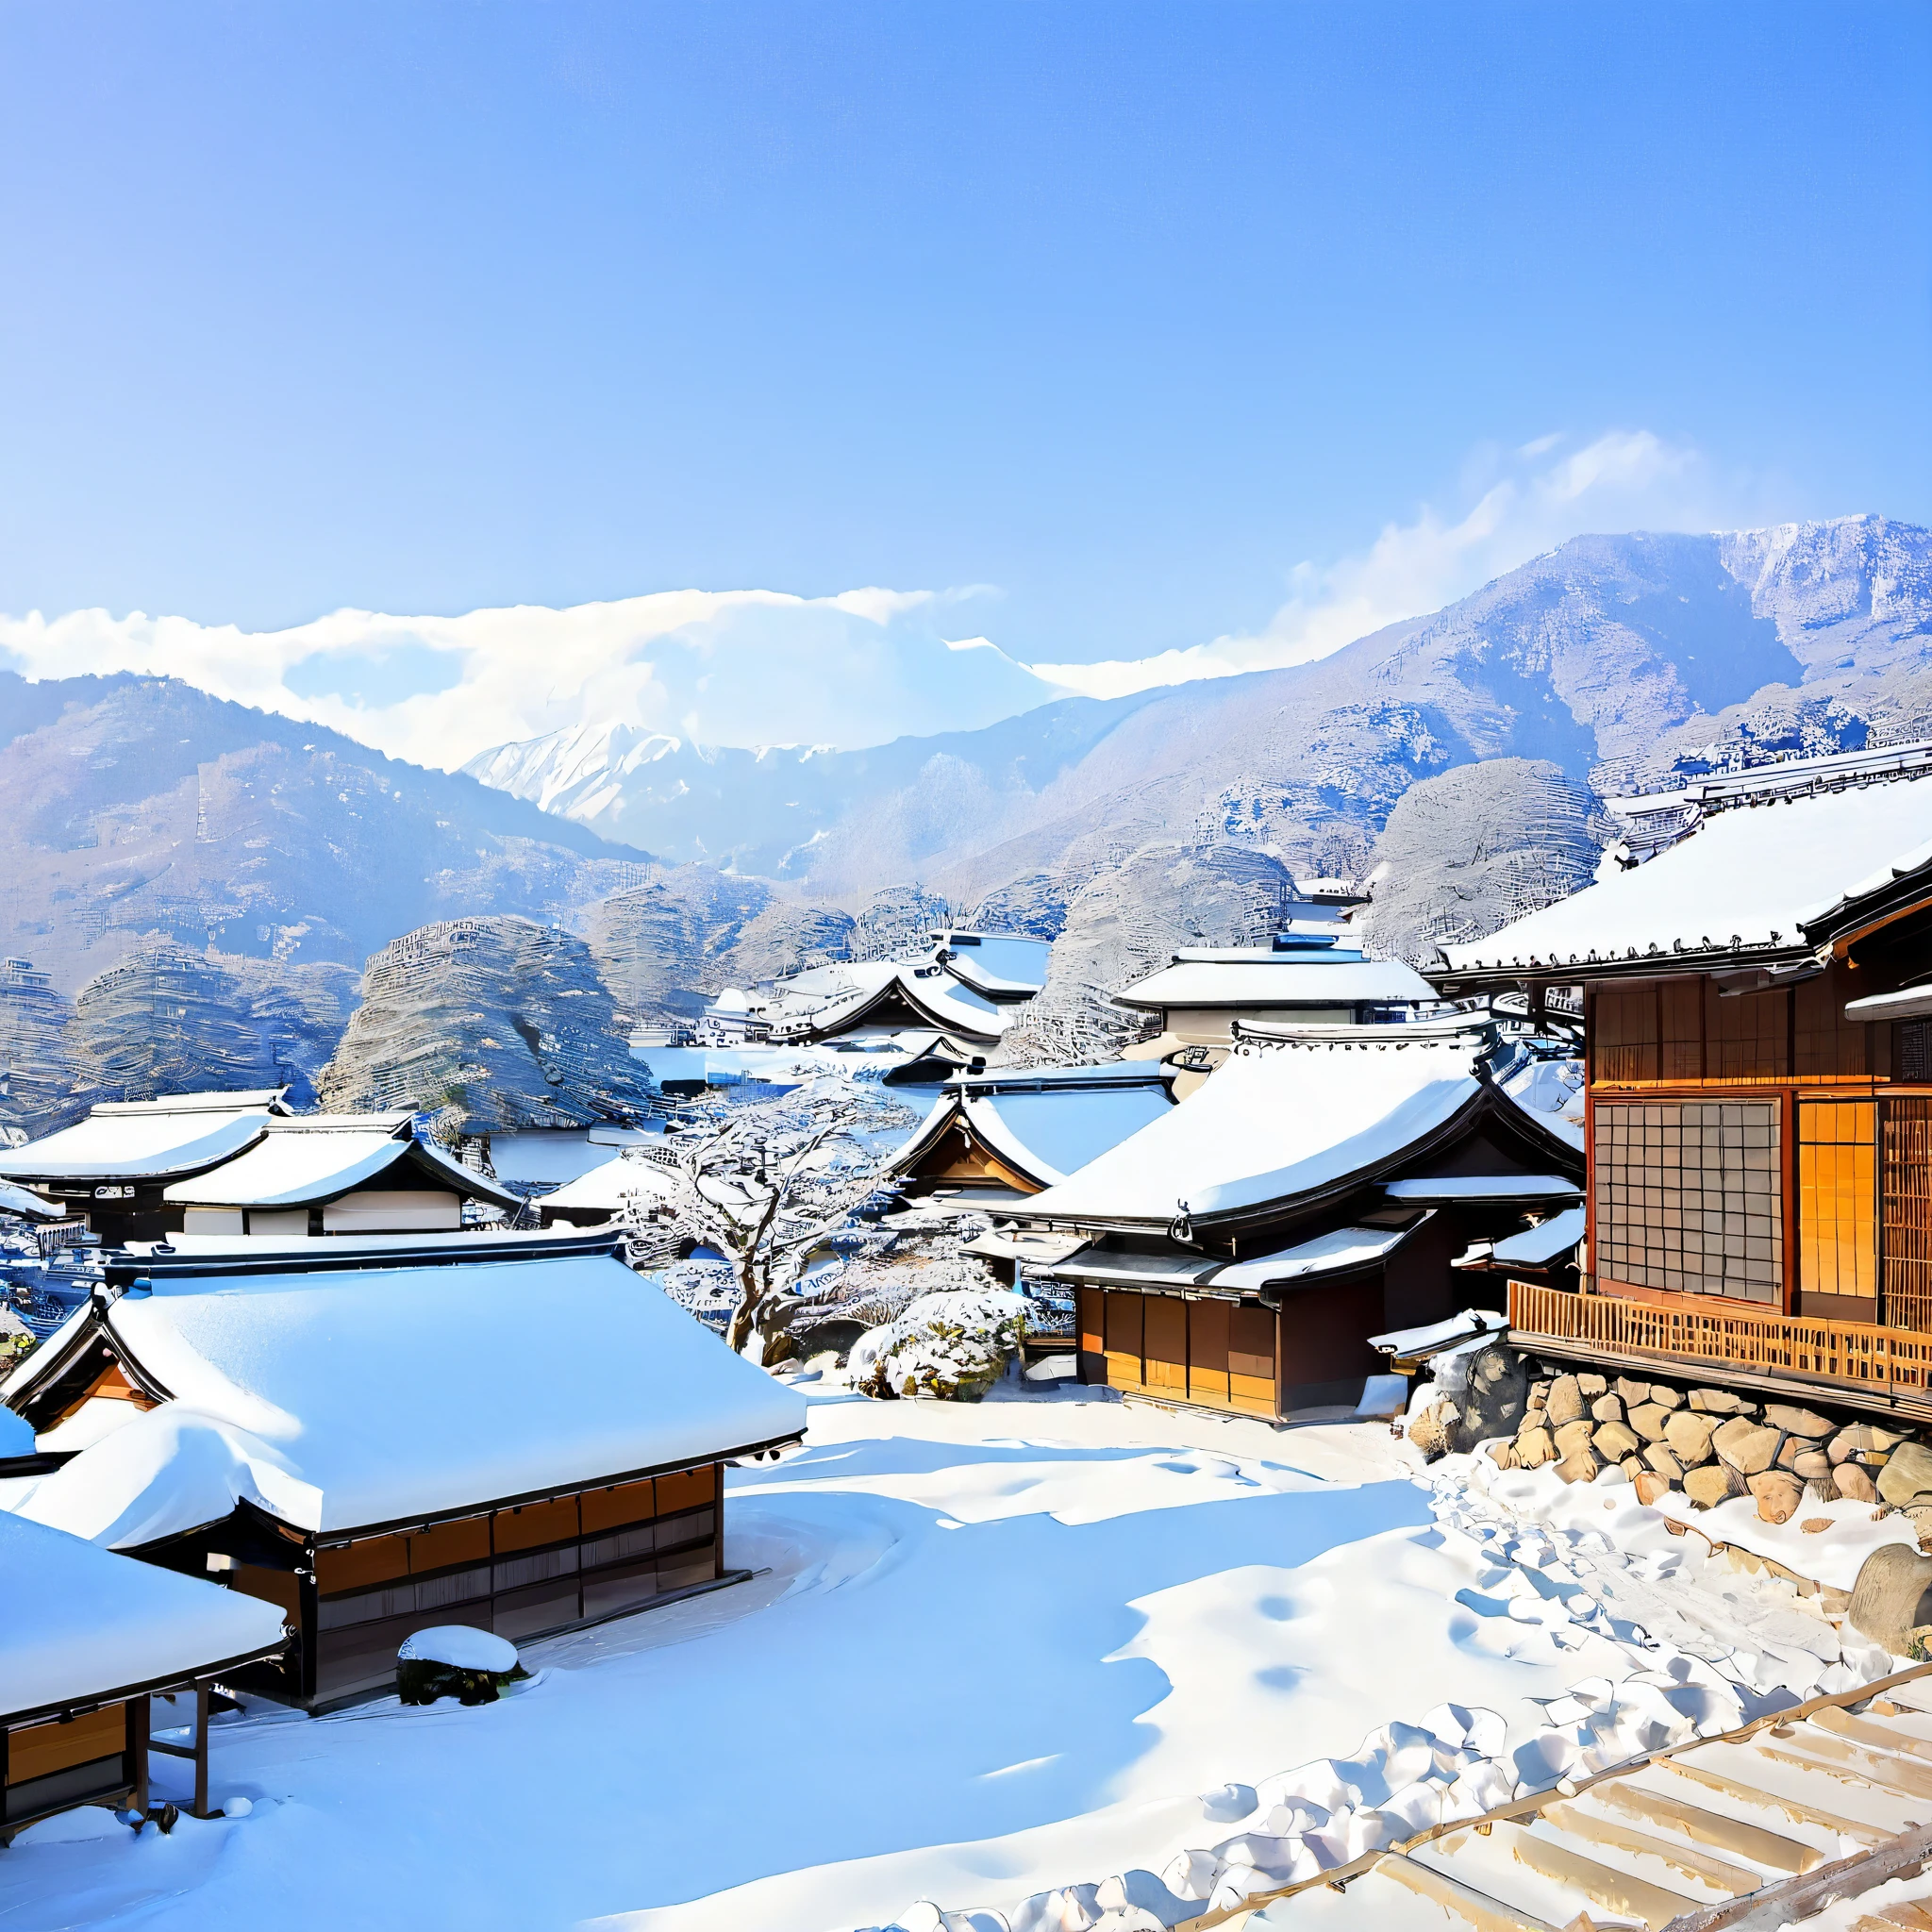 
อธิบายทิวทัศน์ฤดูหนาวในญี่ปุ่น, โดยใช้องค์ประกอบที่เป็นลักษณะเฉพาะของฤดูกาลและภูมิภาค. รวมถึงรายละเอียดต่างๆ เช่น ภูเขาที่ปกคลุมไปด้วยหิมะ, ต้นไม้ประดับด้วยเกล็ดหิมะ, ท้องฟ้าสีฟ้าใสและมีแดด, หมู่บ้านญี่ปุ่นดั้งเดิมที่อยู่ห่างไกลออกไปด้วยหลังคาที่ปกคลุมไปด้วยหิมะและควันอันอ่อนโยนจากปล่องไฟ, ตลอดจนการปรากฏตัวของสัตว์ป่าเช่นกระรอกและกระต่าย. ถ่ายทอดความรู้สึกสงบ, มายากล, และความงามอันบริสุทธิ์ที่ภูมิทัศน์แห่งนี้เป็นแรงบันดาลใจ, โดยใช้ภาษาที่สดใสและเป็นบทกวี.